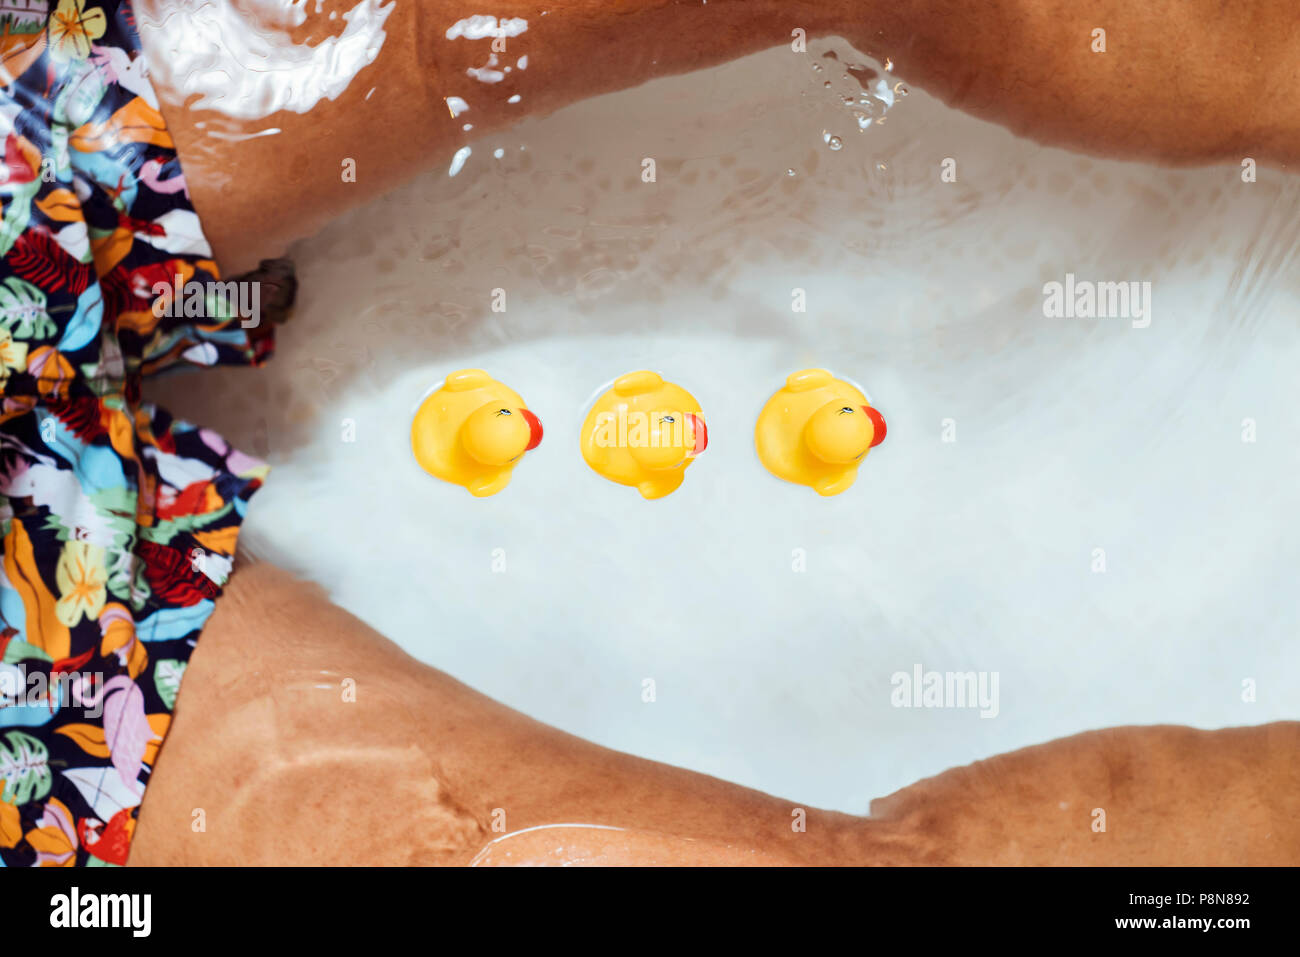 Elevato angolo di visione di un giovane uomo caucasico che indossa un costume da bagno rilassante, circondato da gomma anatre, nella vasca del bagno Foto Stock